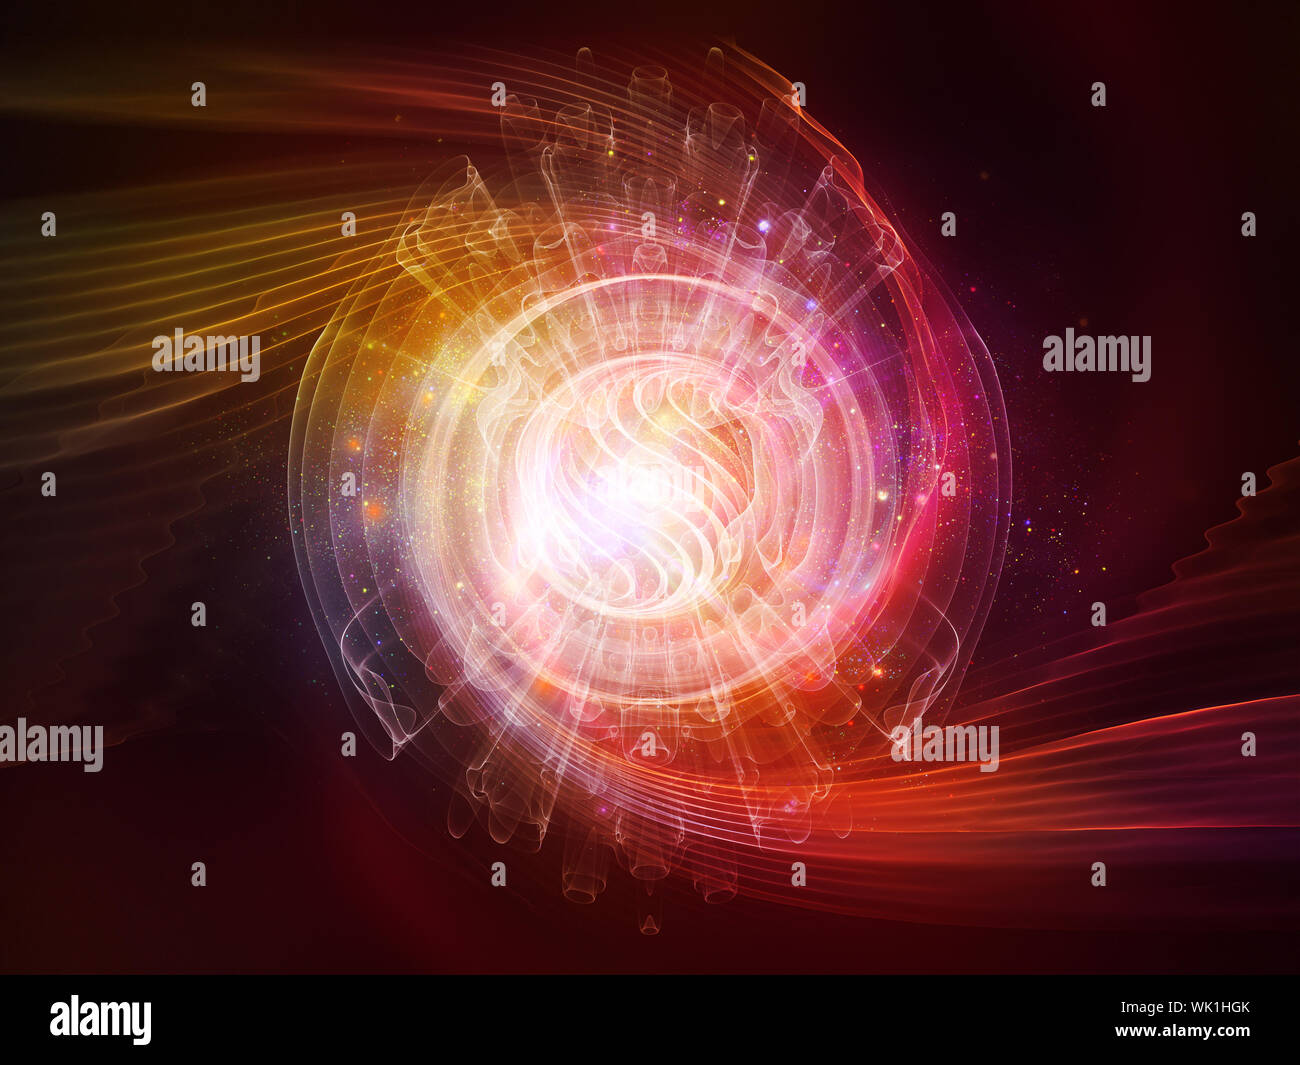 Serie atomica. Gioco di luci e di elementi di fractal sul tema della meccanica quantistica, la fisica delle particelle e l'energia. Foto Stock